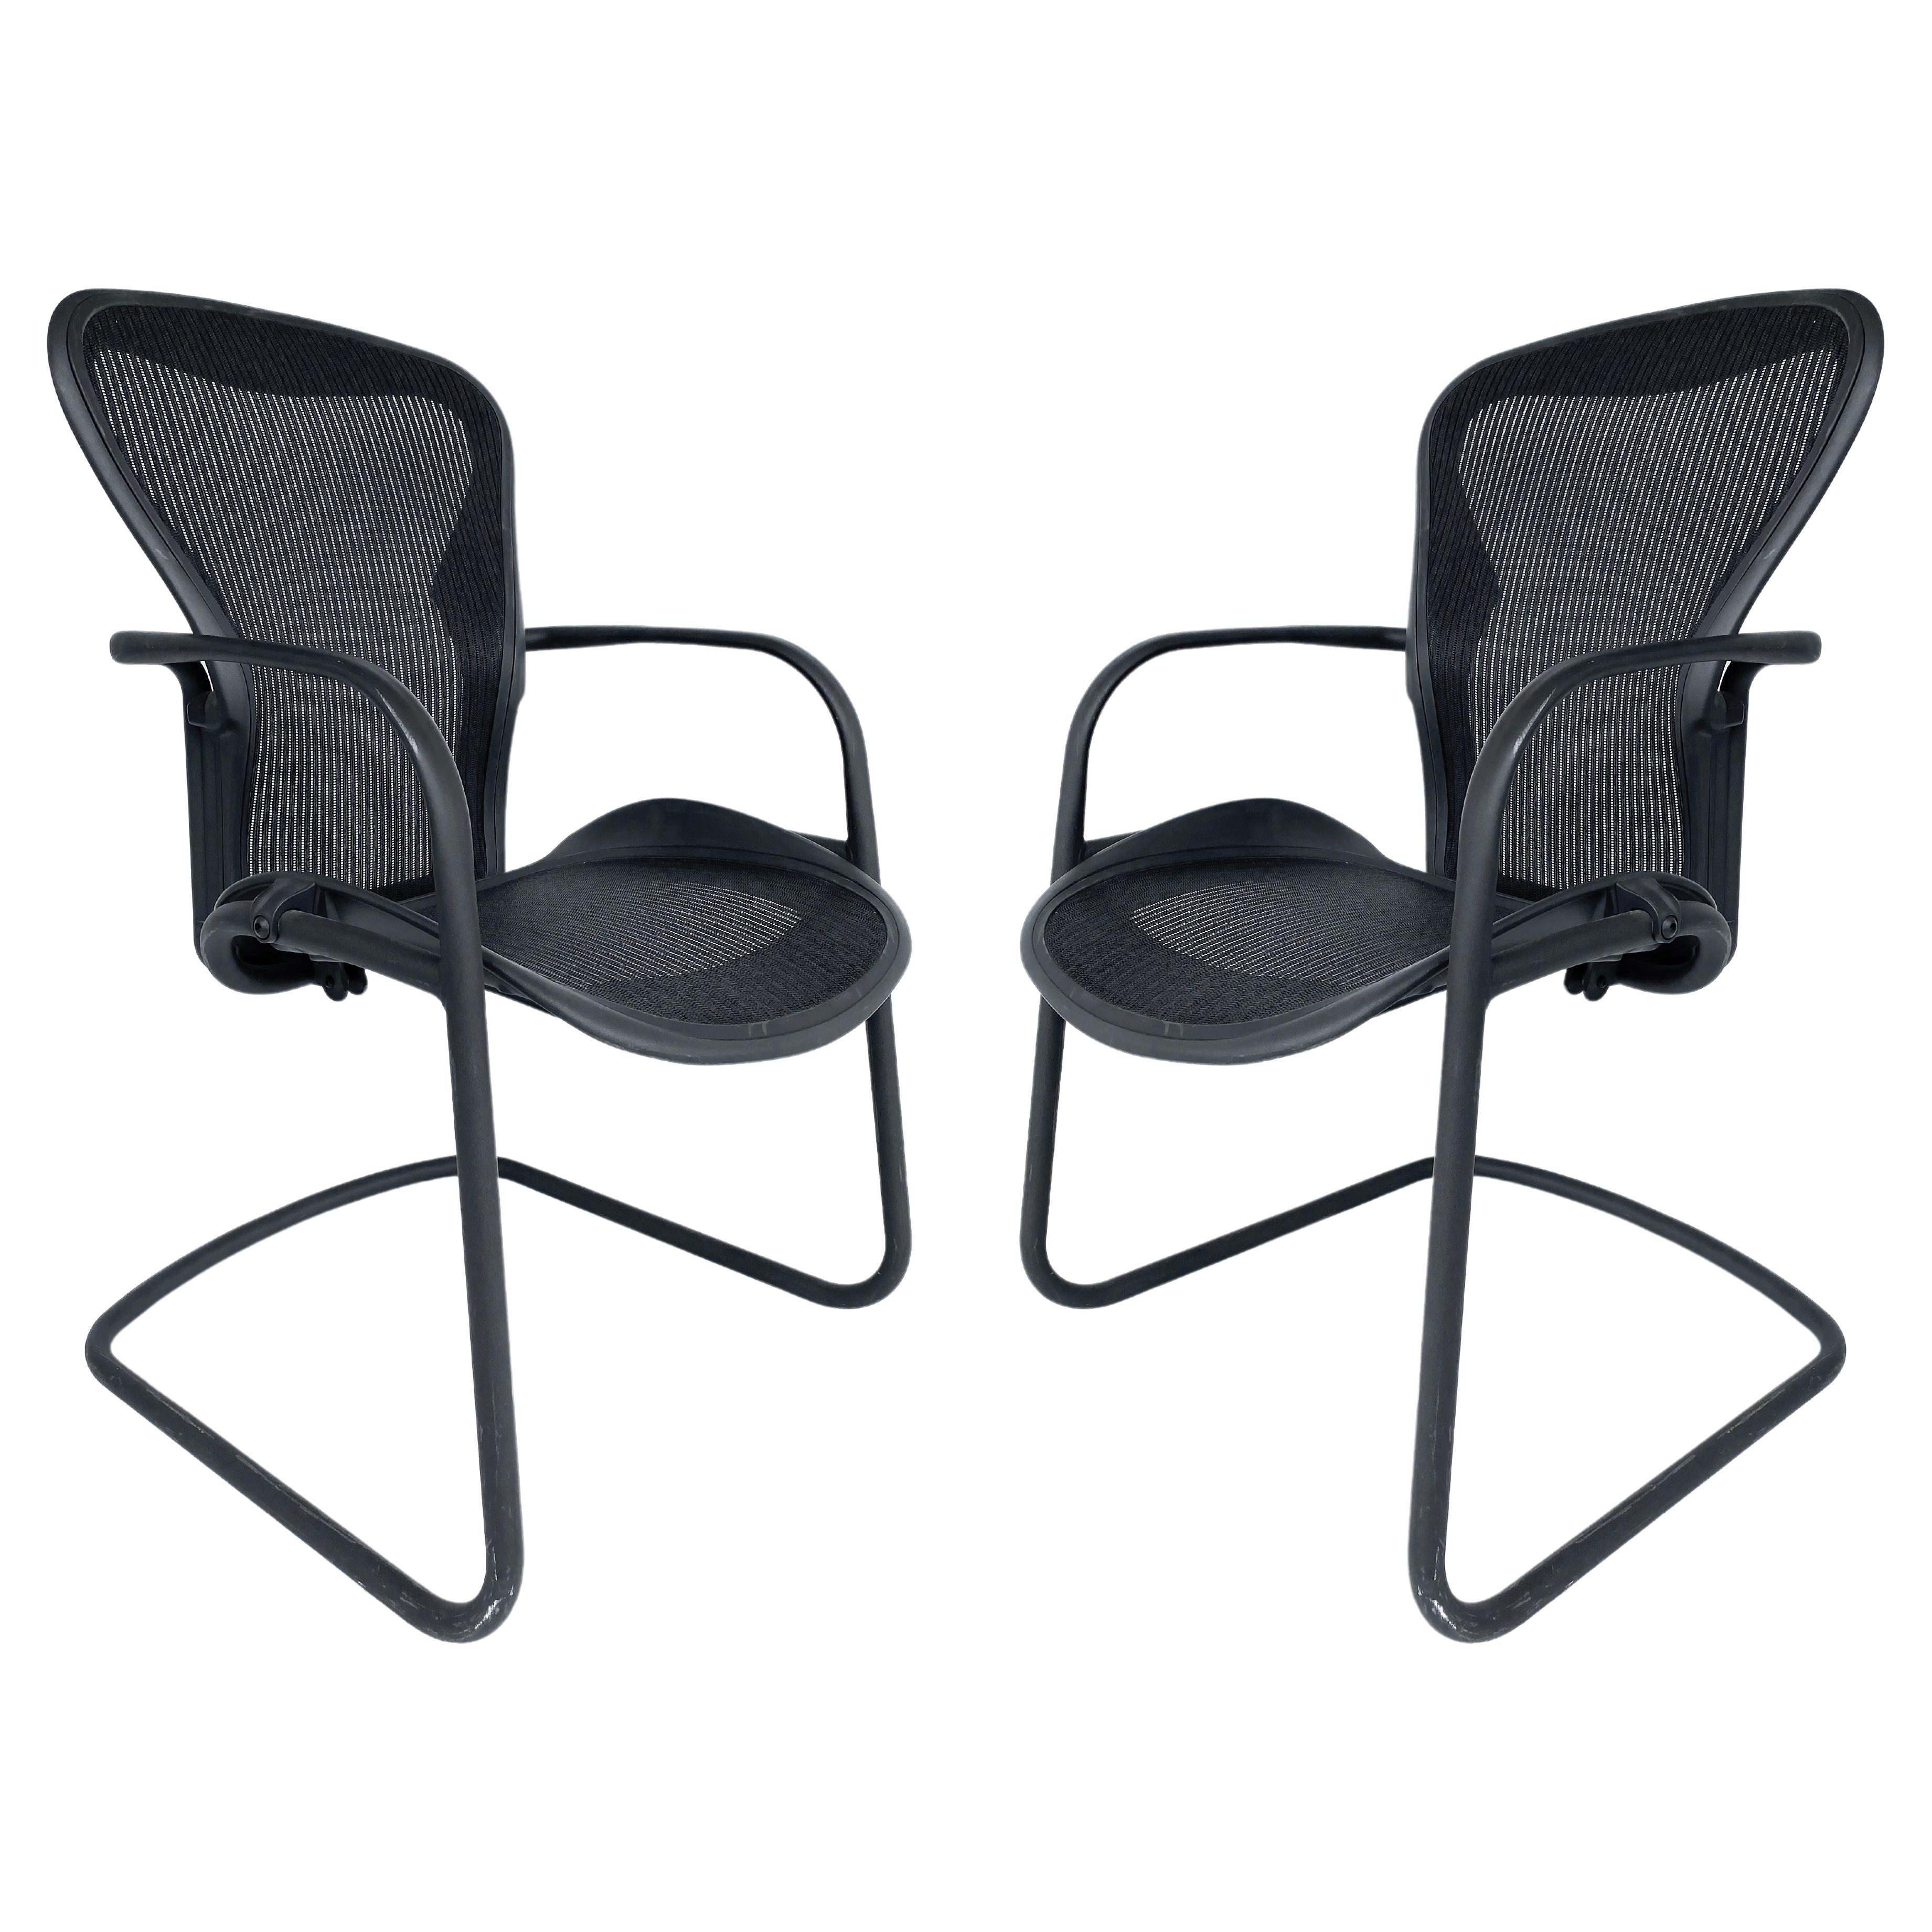 Chaises d'appoint ergonomiques Aeron de Herman Miller  Cadres et grilles en métal tubulaire noir 